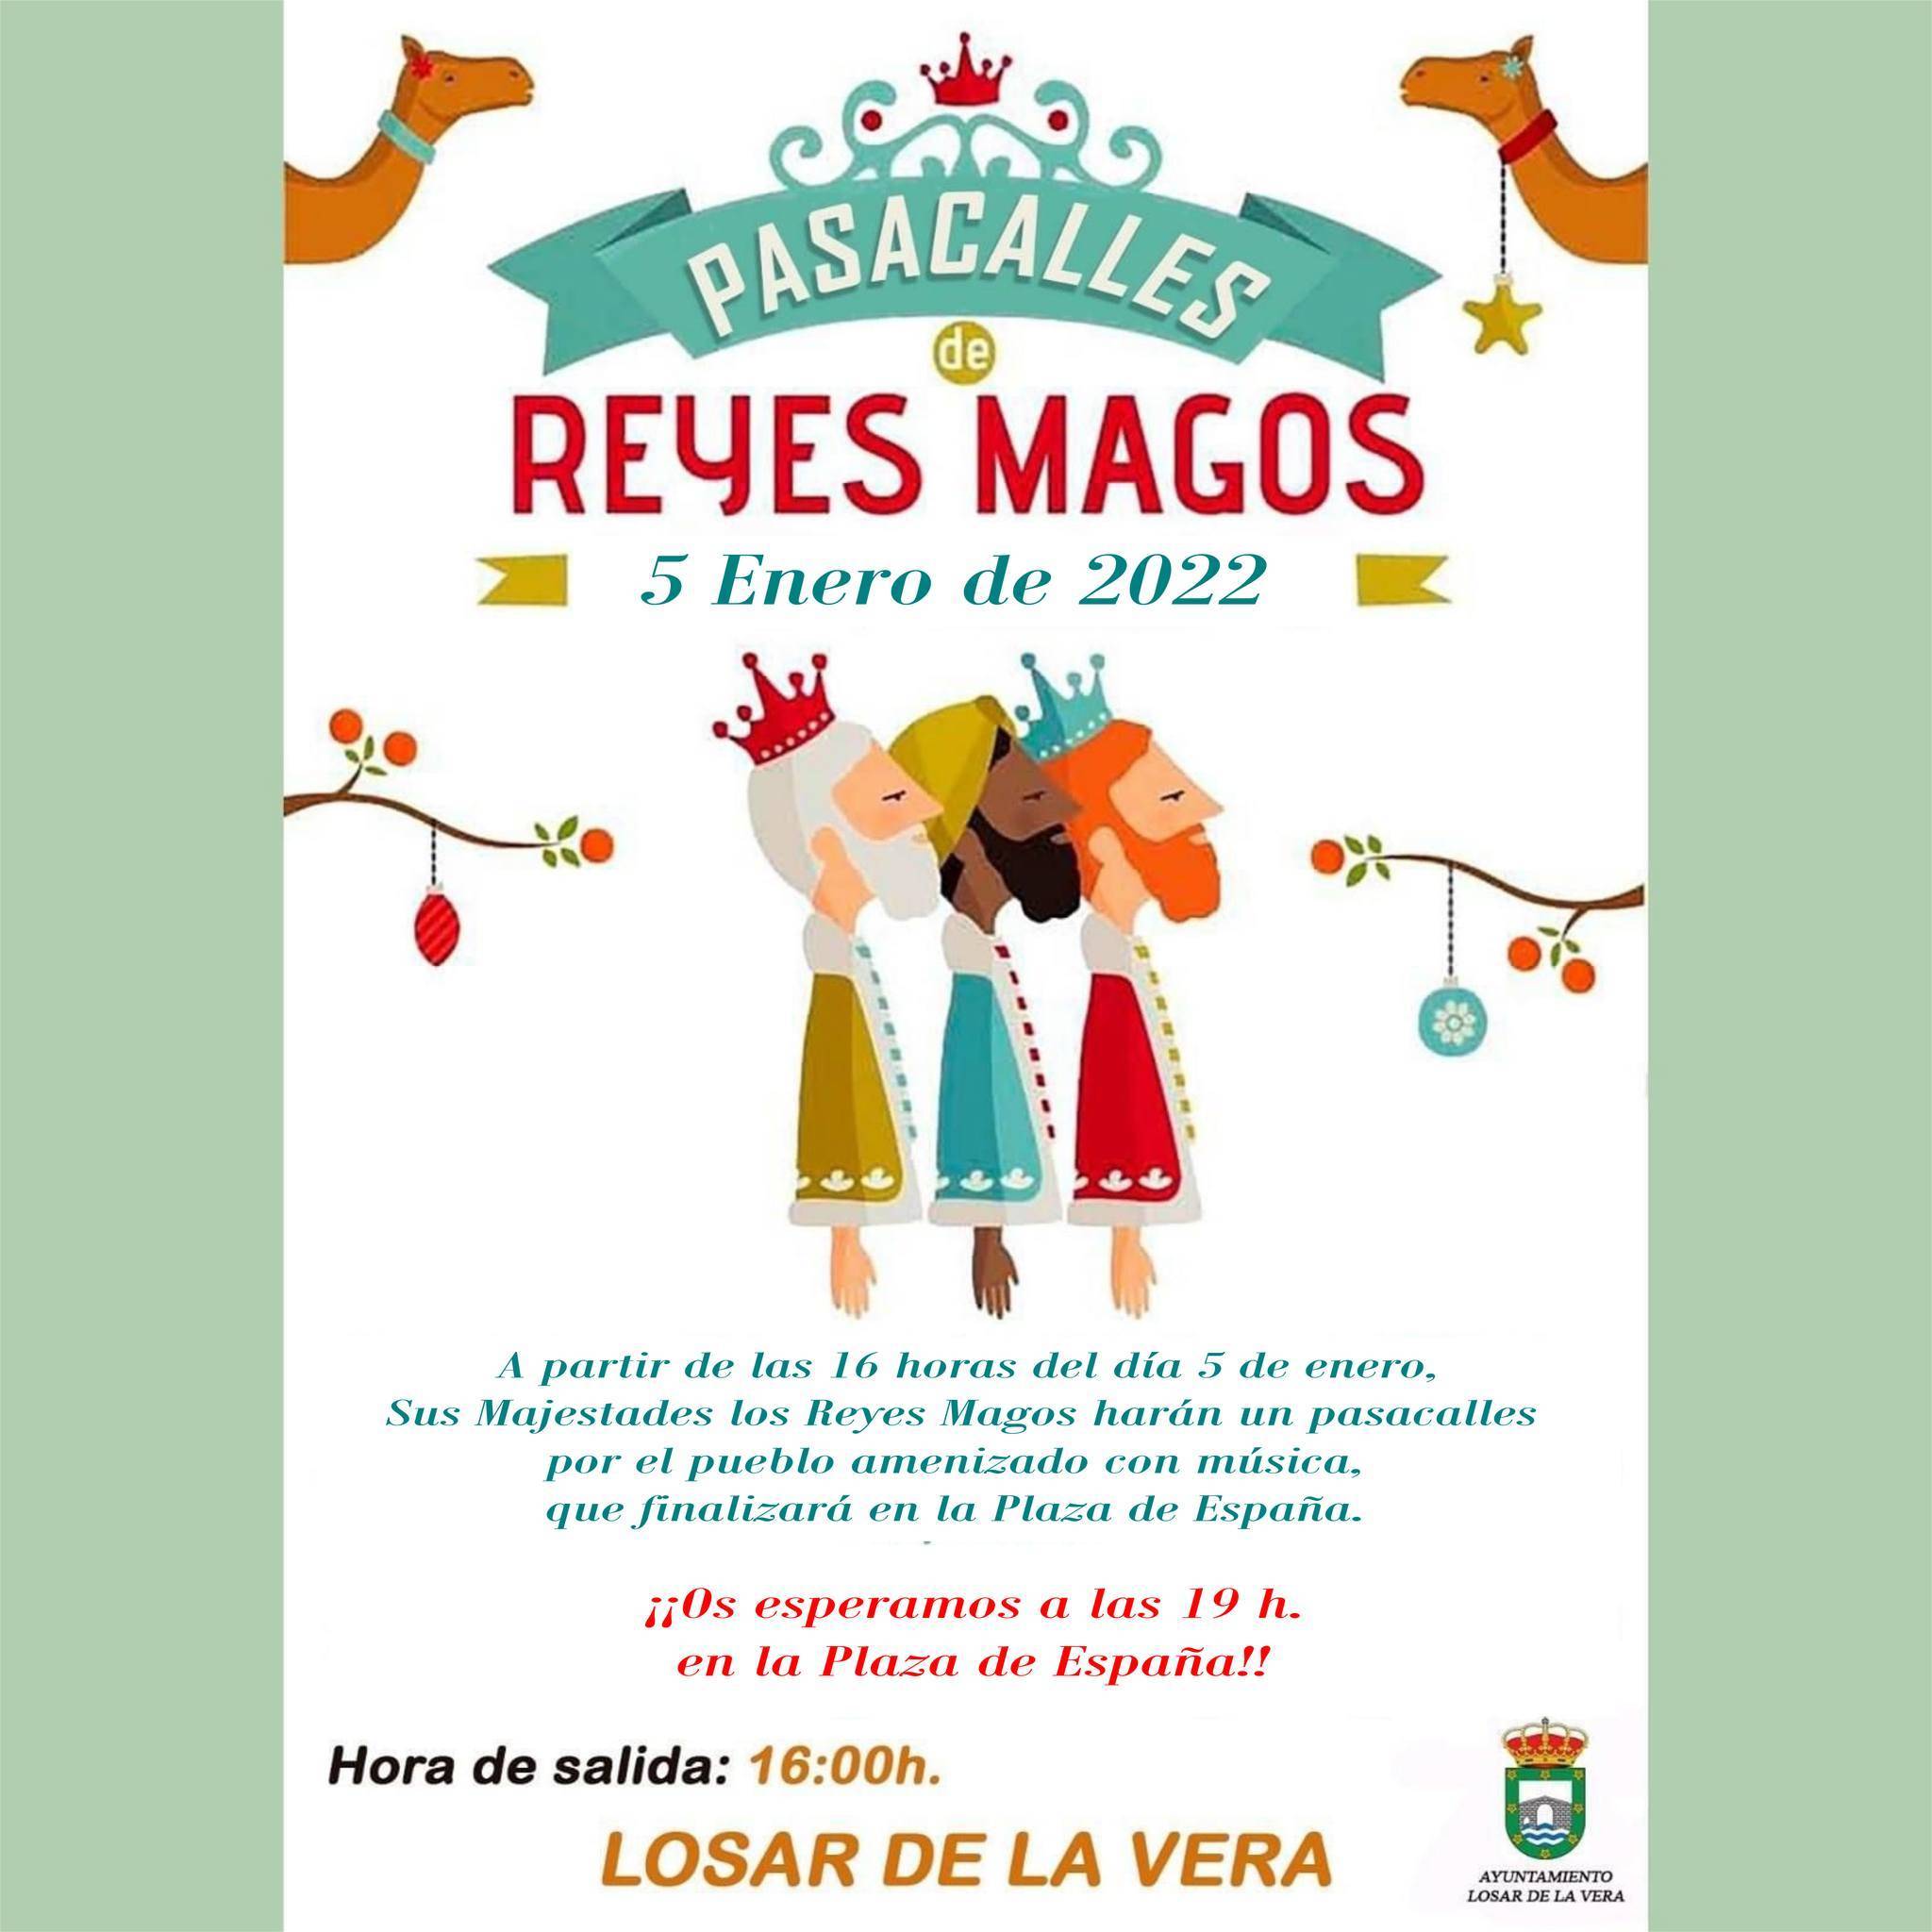 Pasacalles de Reyes Magos (2022) - Losar de la Vera (Cáceres)